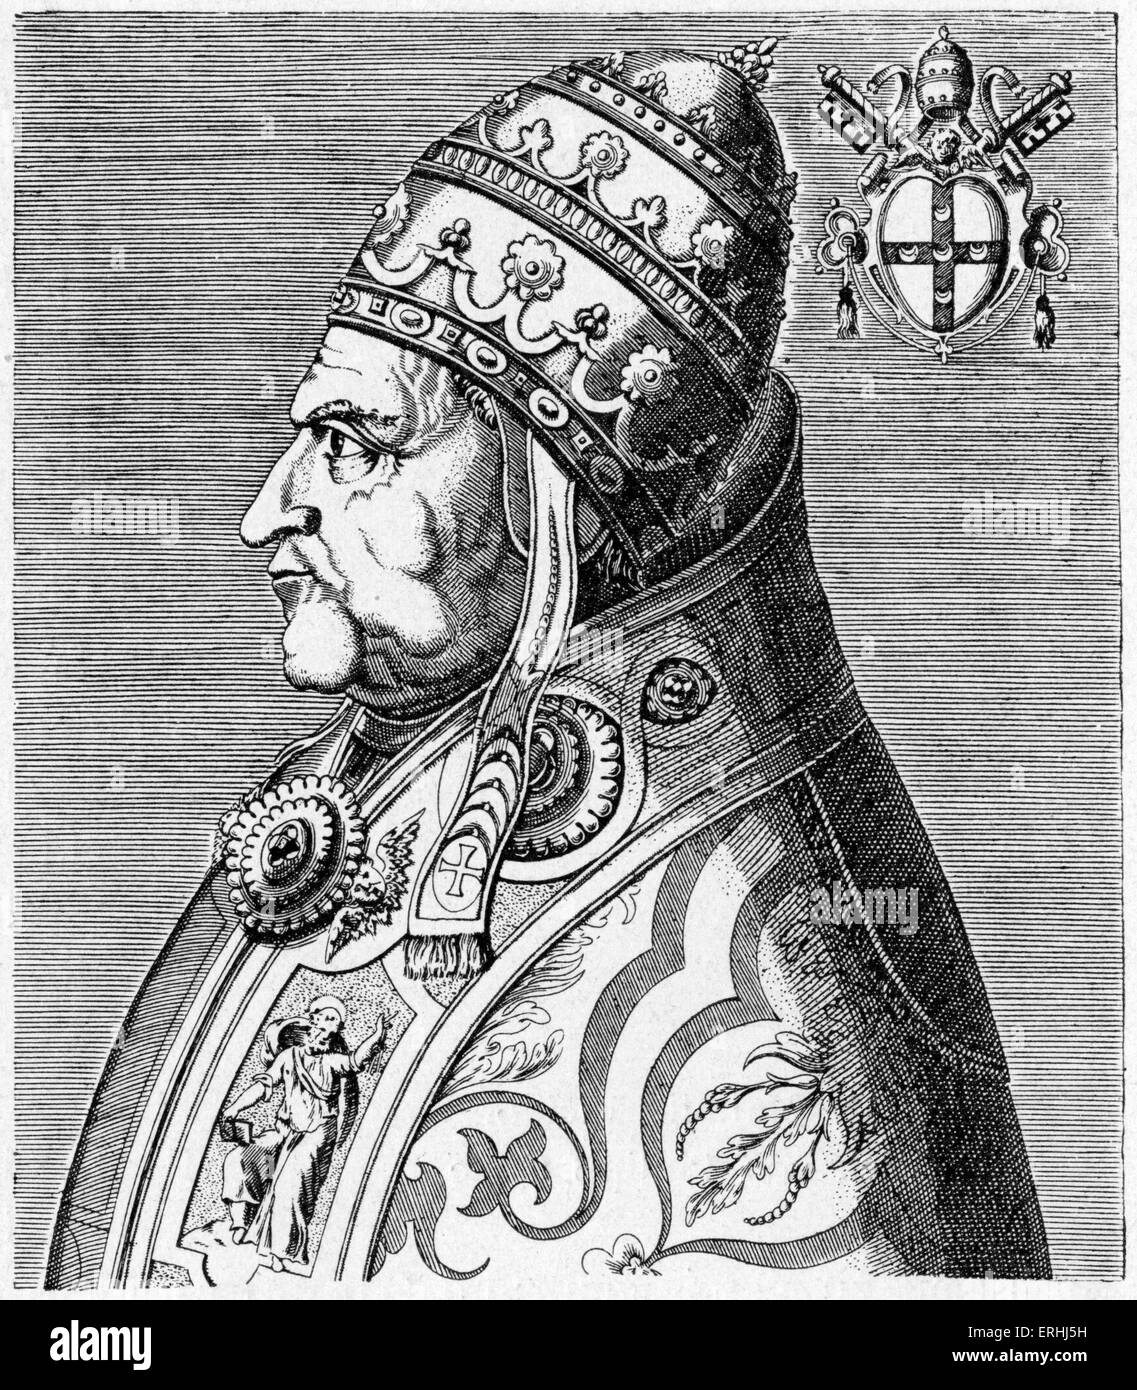 Le pape Pie II - portrait, de profil, avec des armoiries. Gravure par Philippe Galle, à partir de l'œuvre 'Virorum doctorum de Banque D'Images